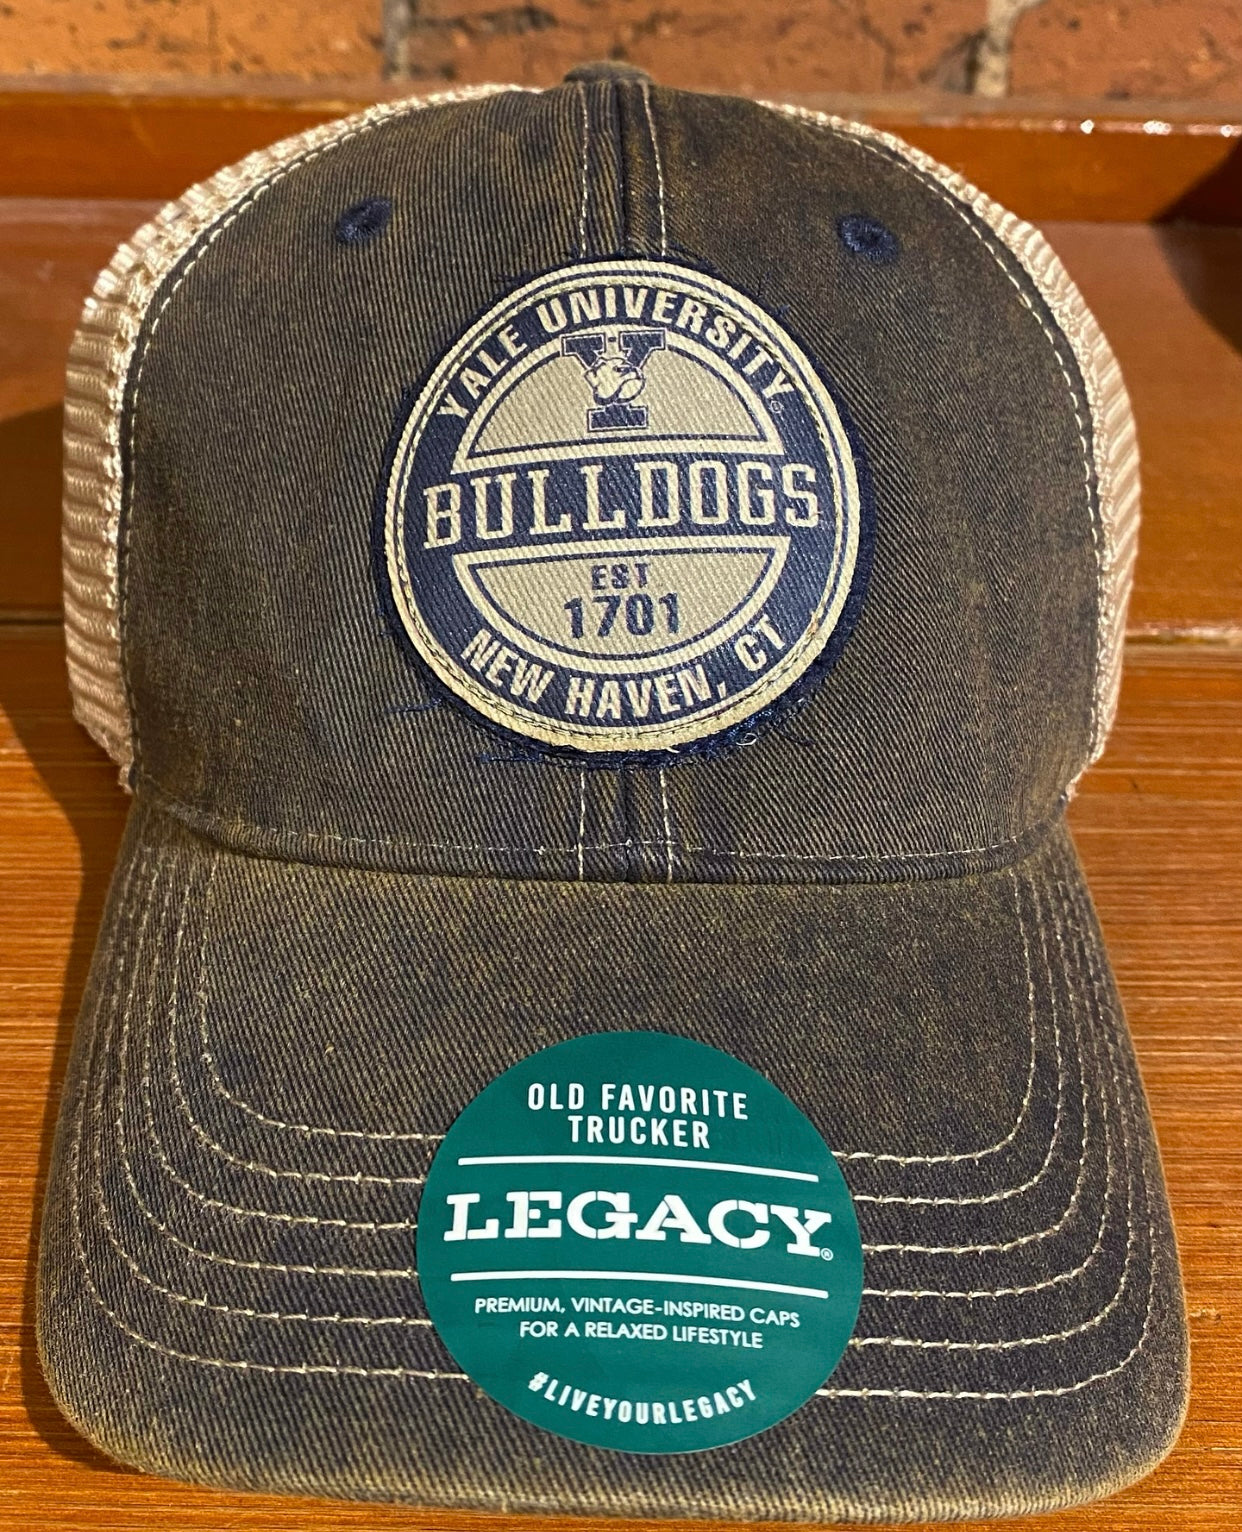 Yale Legacy Trucker Hat